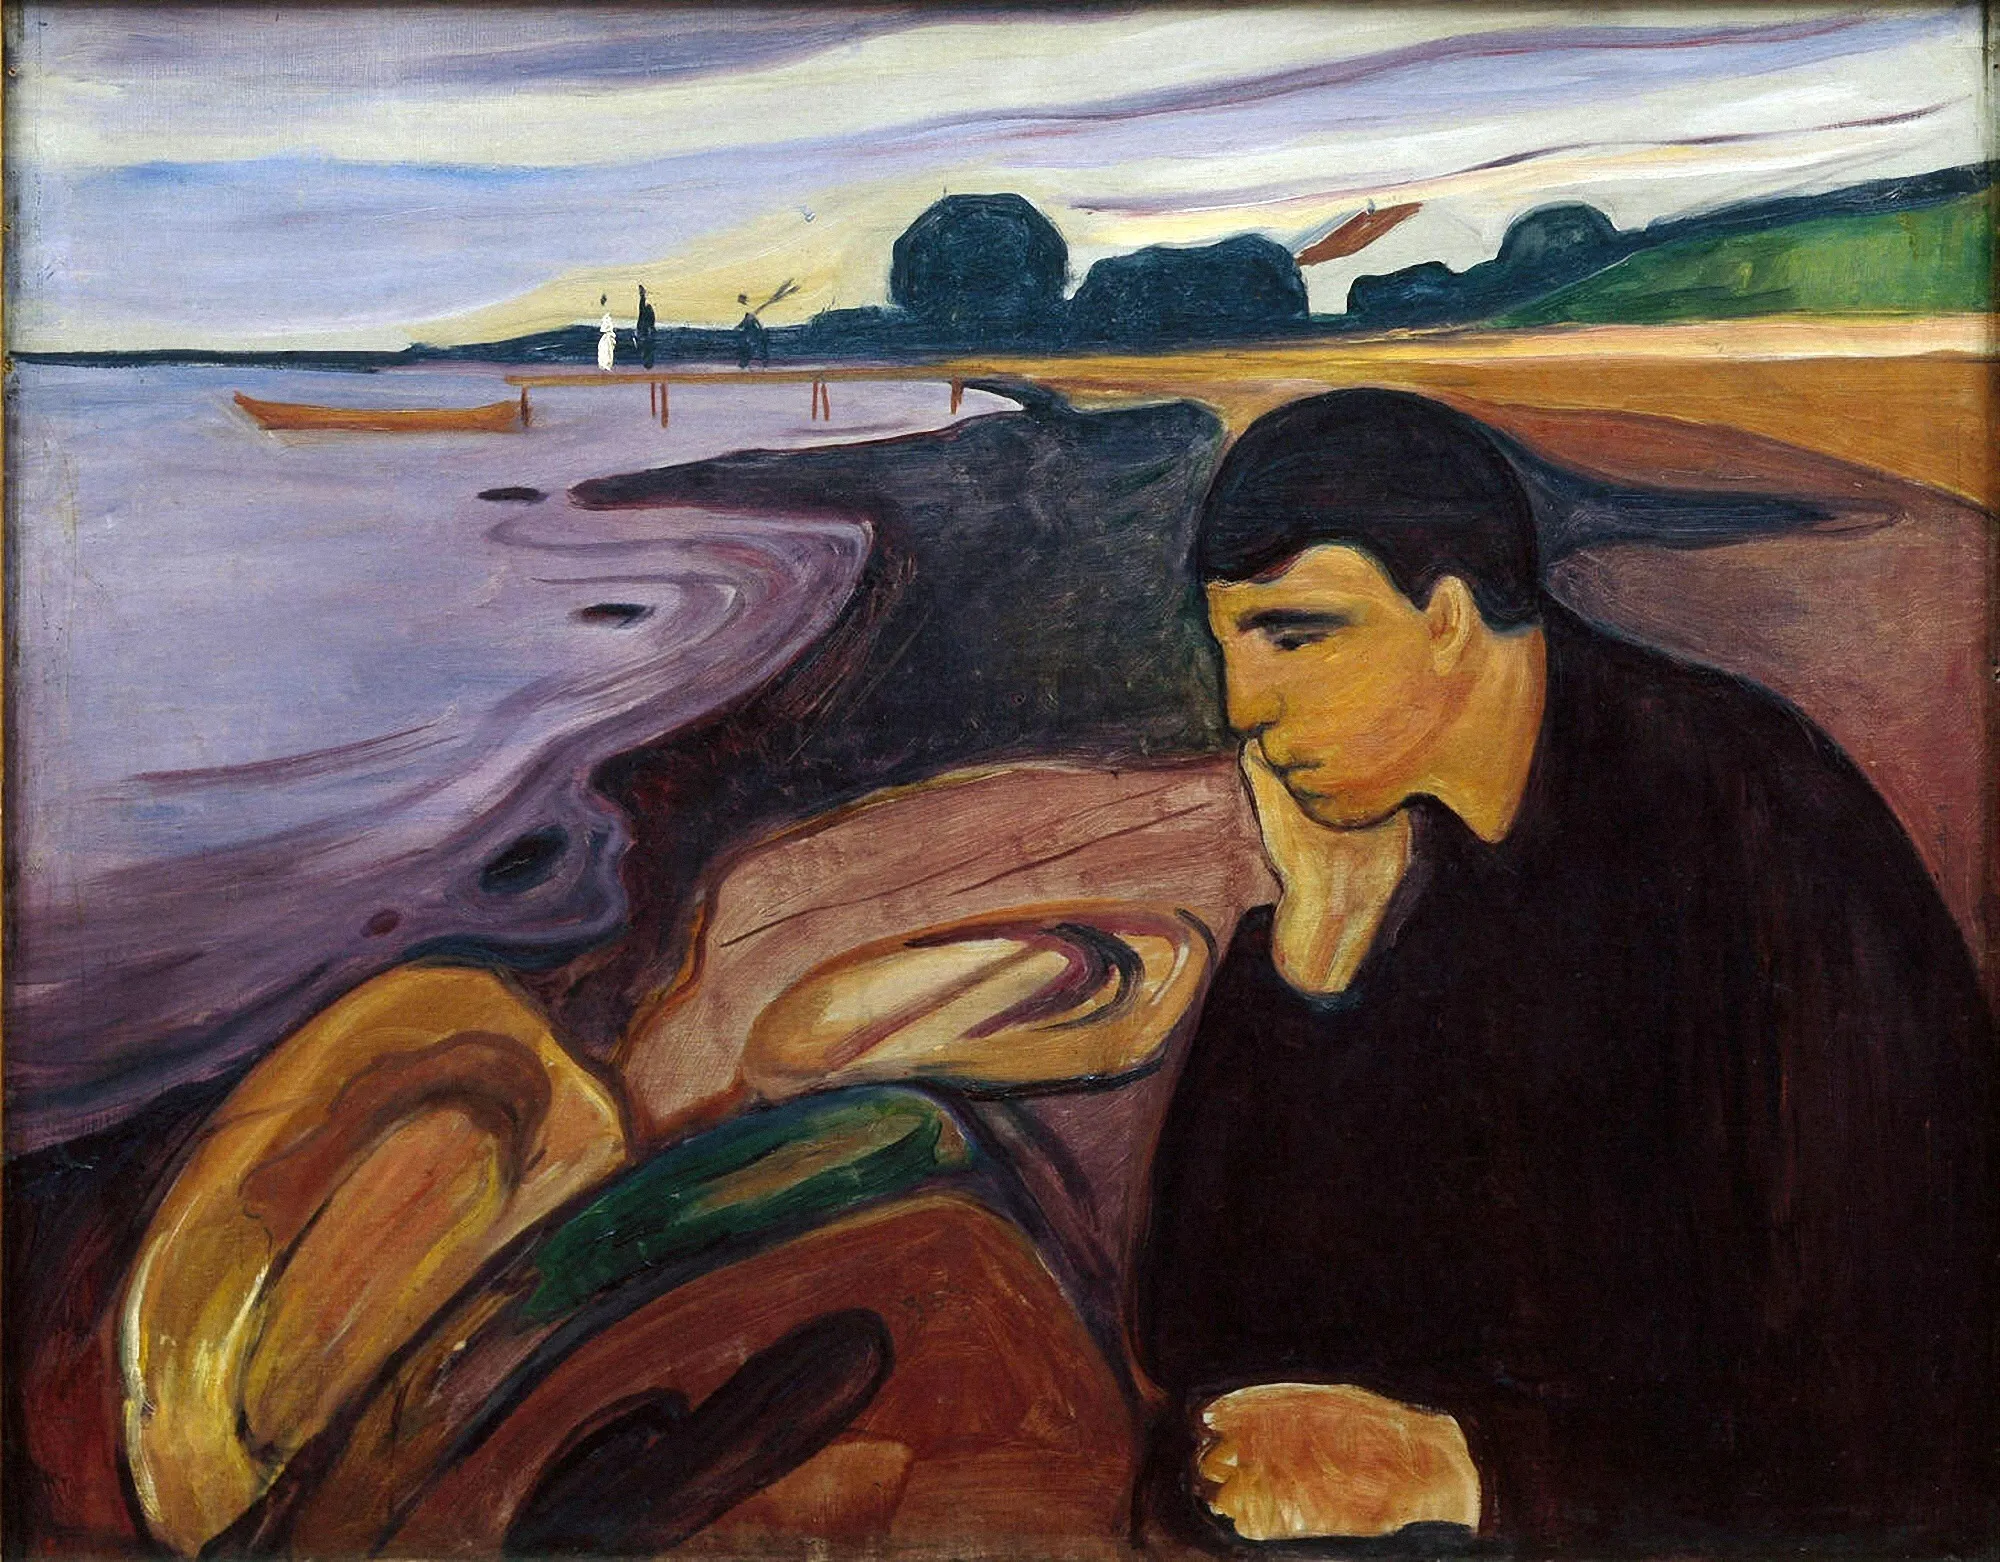 Edvard Munch, Melancholy, 1894-96